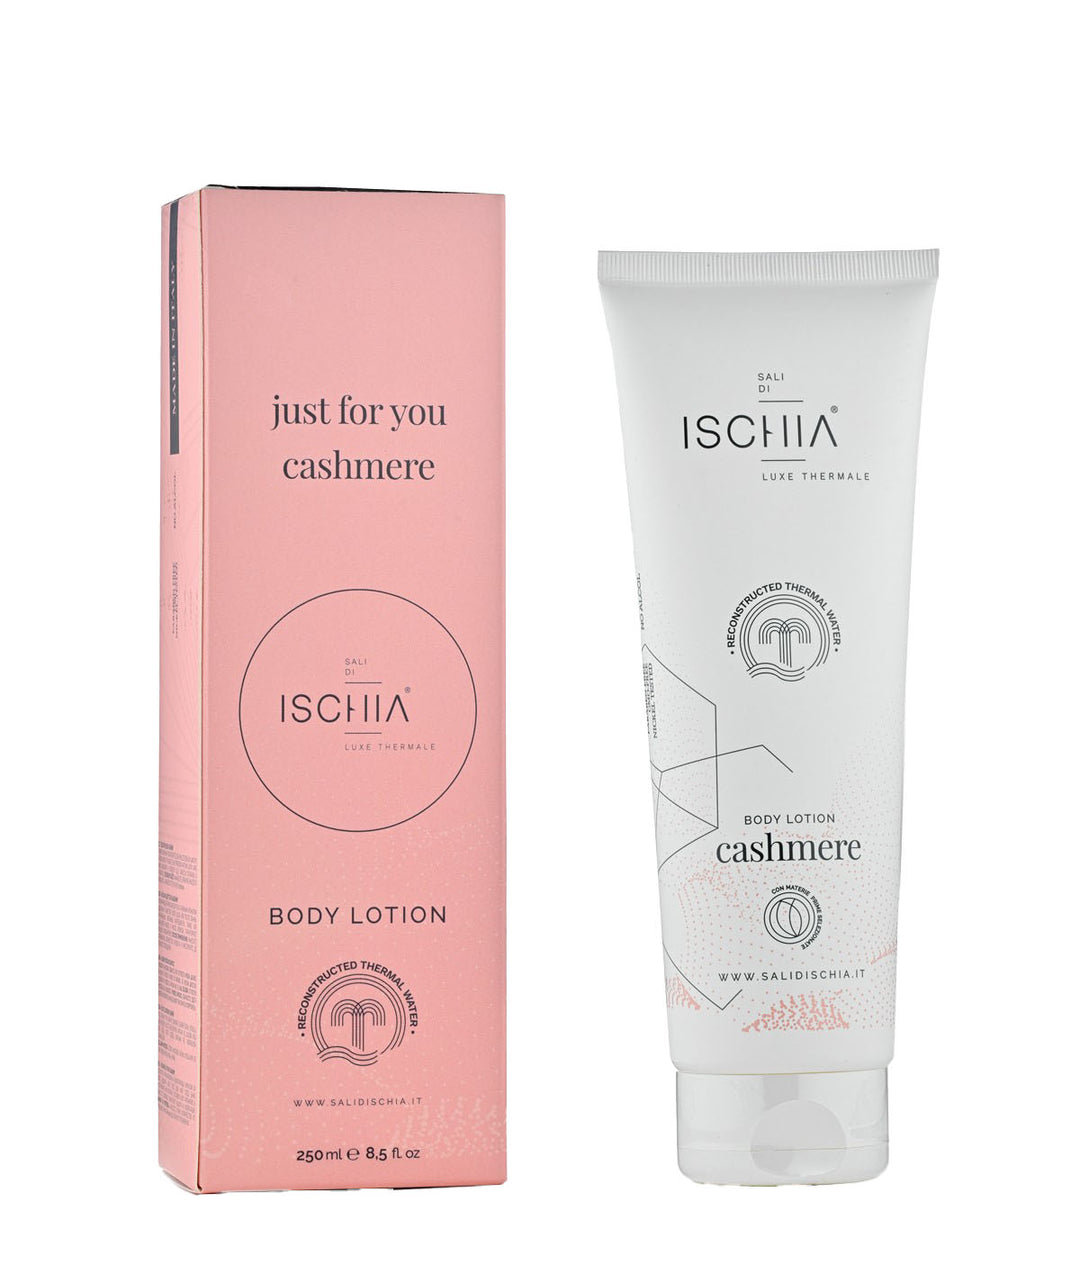 

Ischia Salt Cashmere Body Lotion Moisturizing Emulsion for Body 250 ml